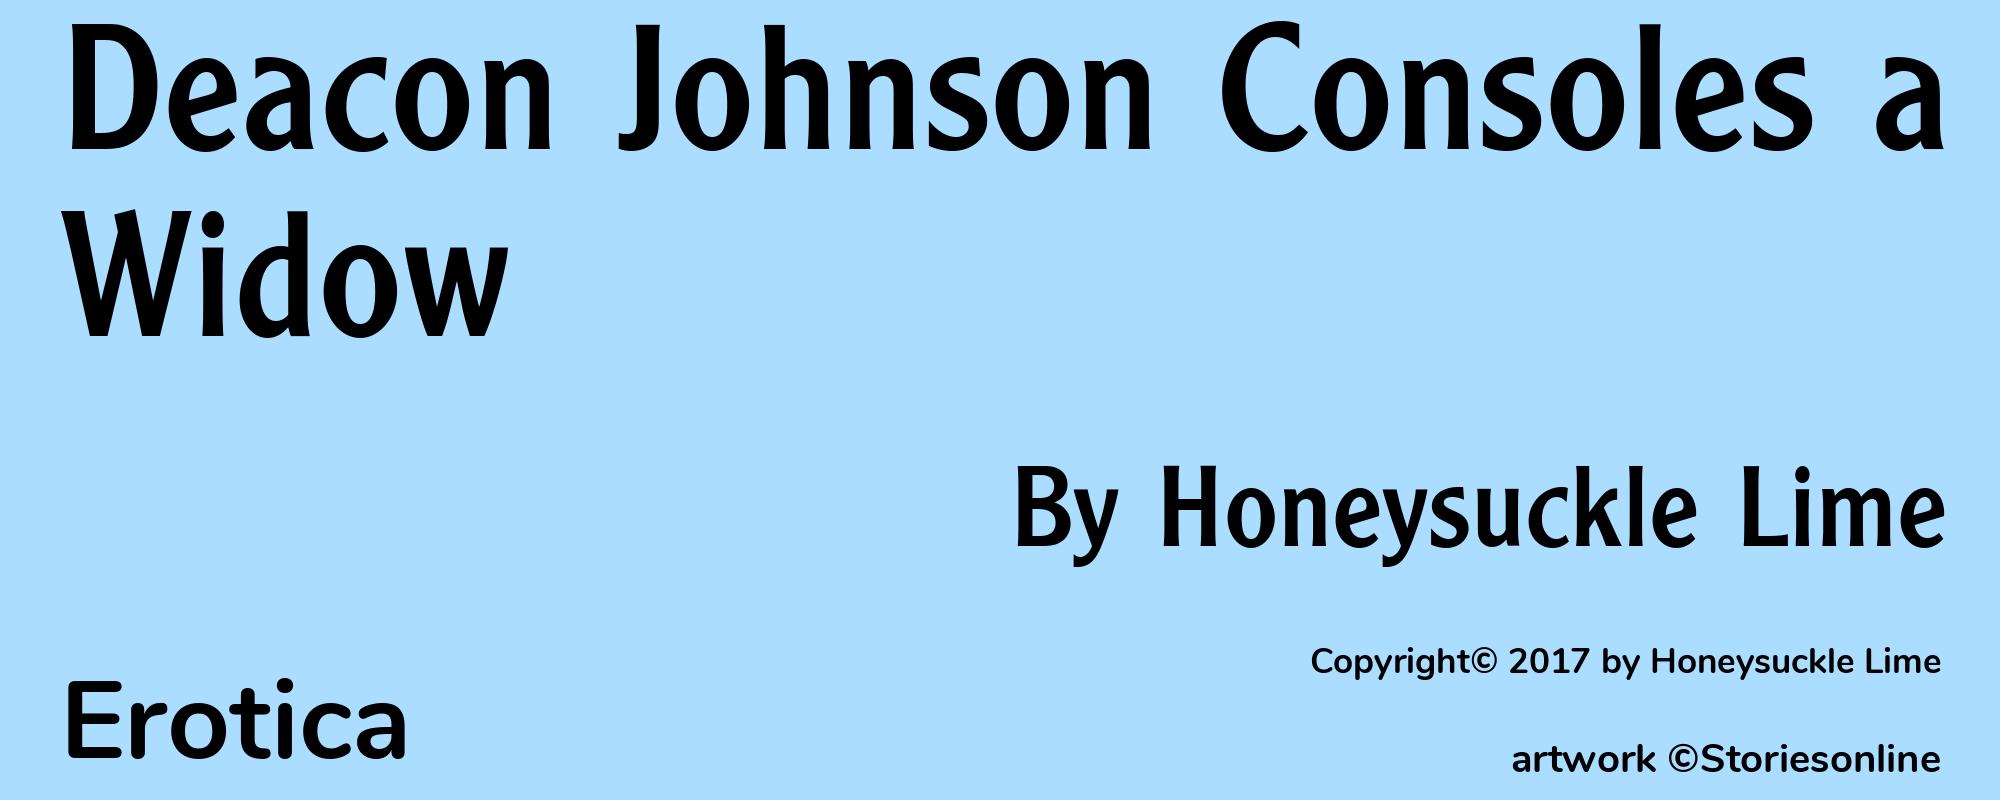 Deacon Johnson Consoles a Widow - Cover